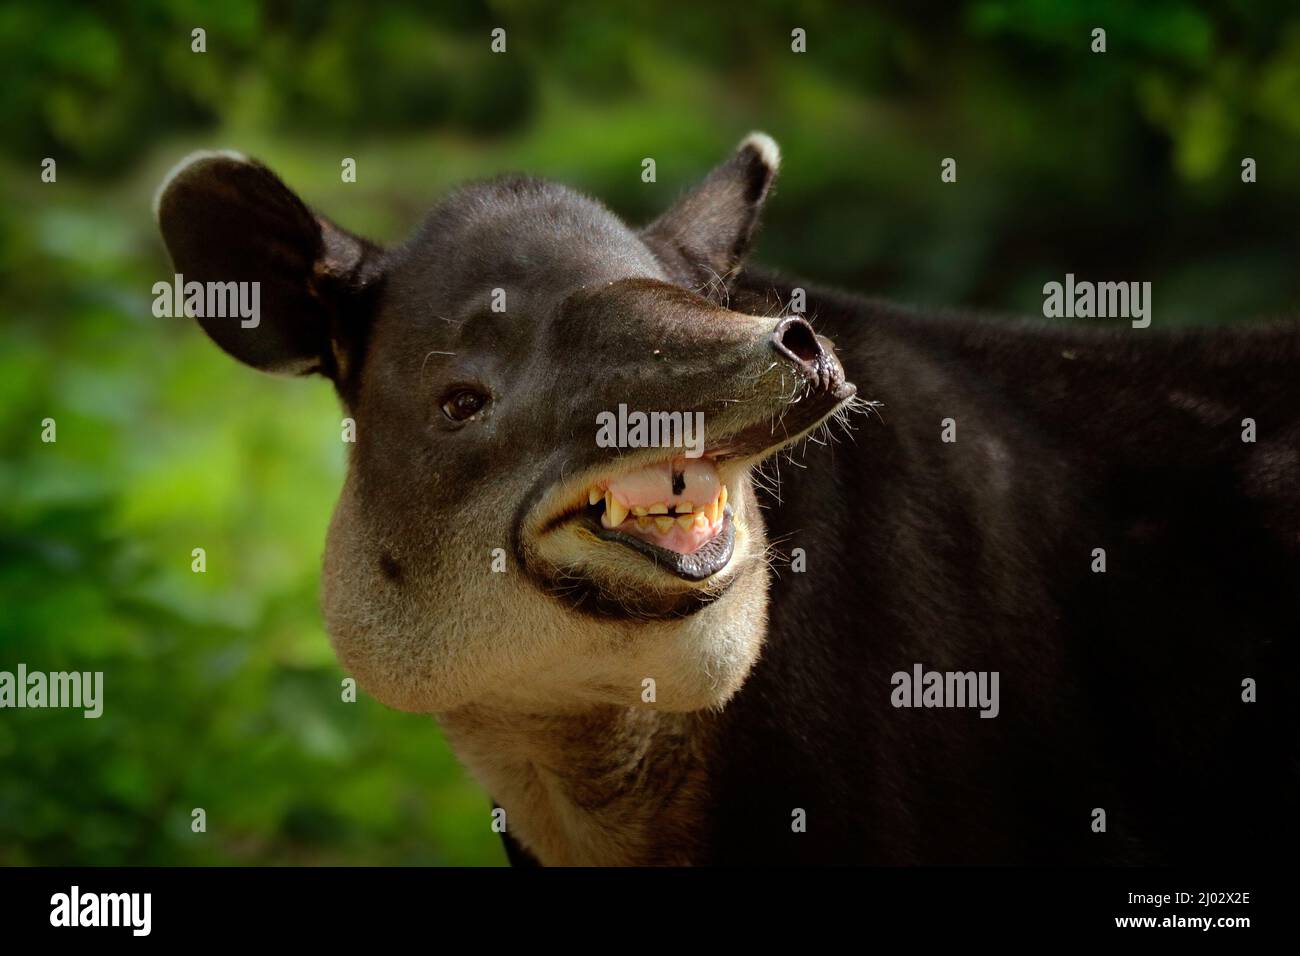 Lachend fröhliche Tapir mit offener Schnauze in der Natur. Zentralamerika Baird's Tapir, Tapirus bairdii, in grüner Vegetation. Nahaufnahme eines seltenen Anima Stockfoto